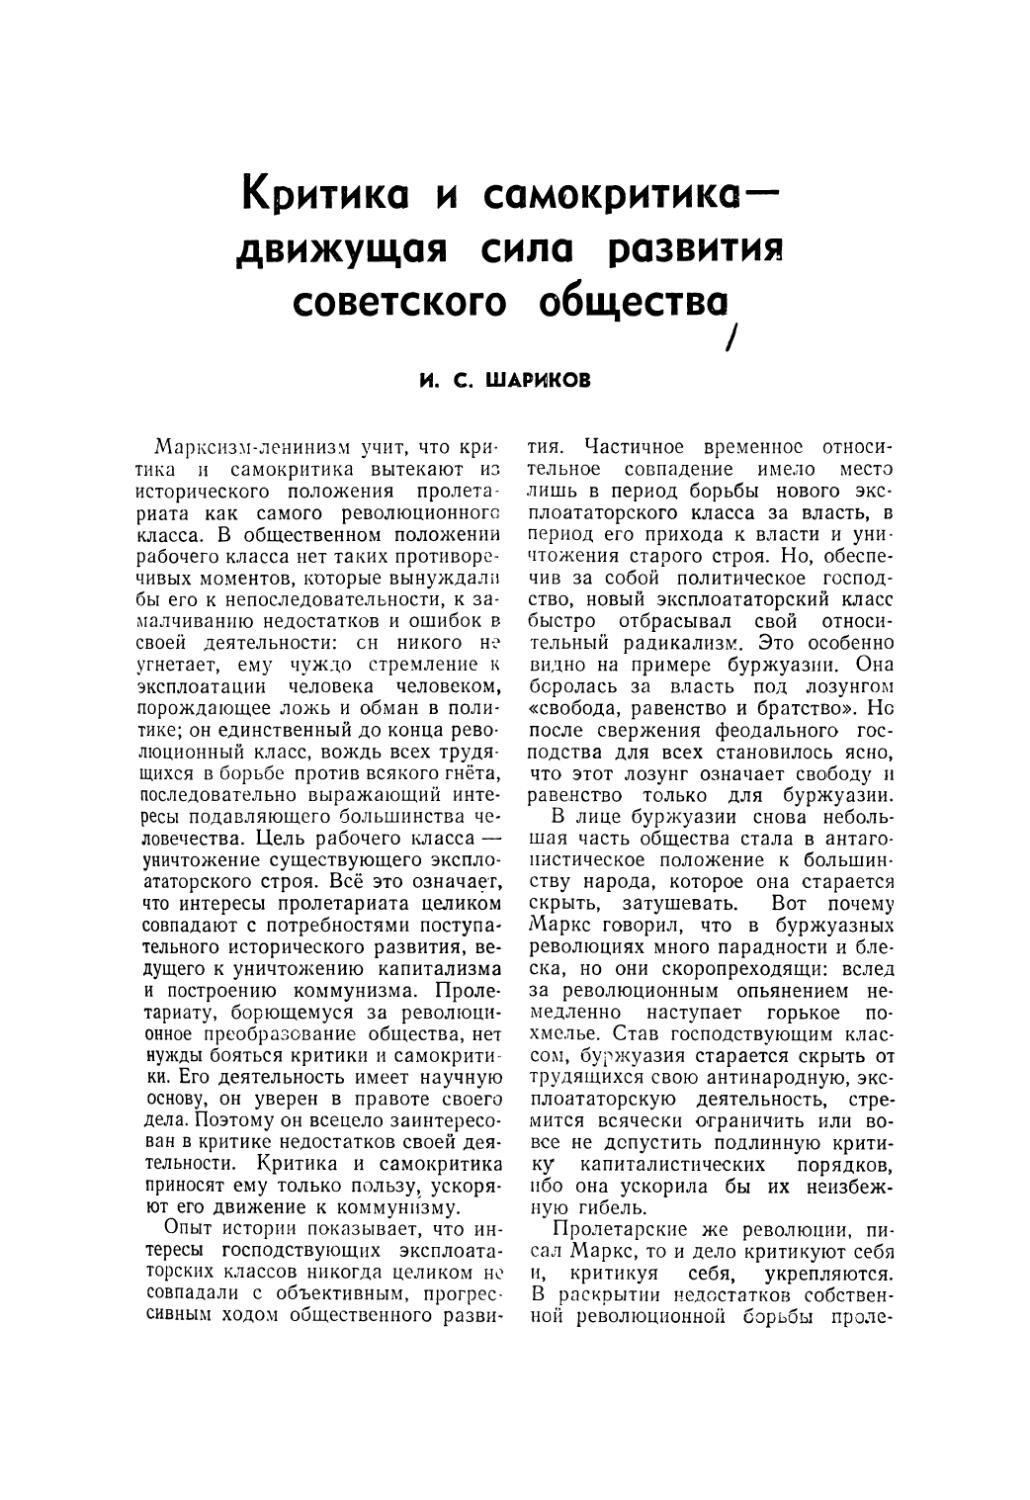 И. С. Шариков — Критика и самокритика — движущая сила развития советского общества